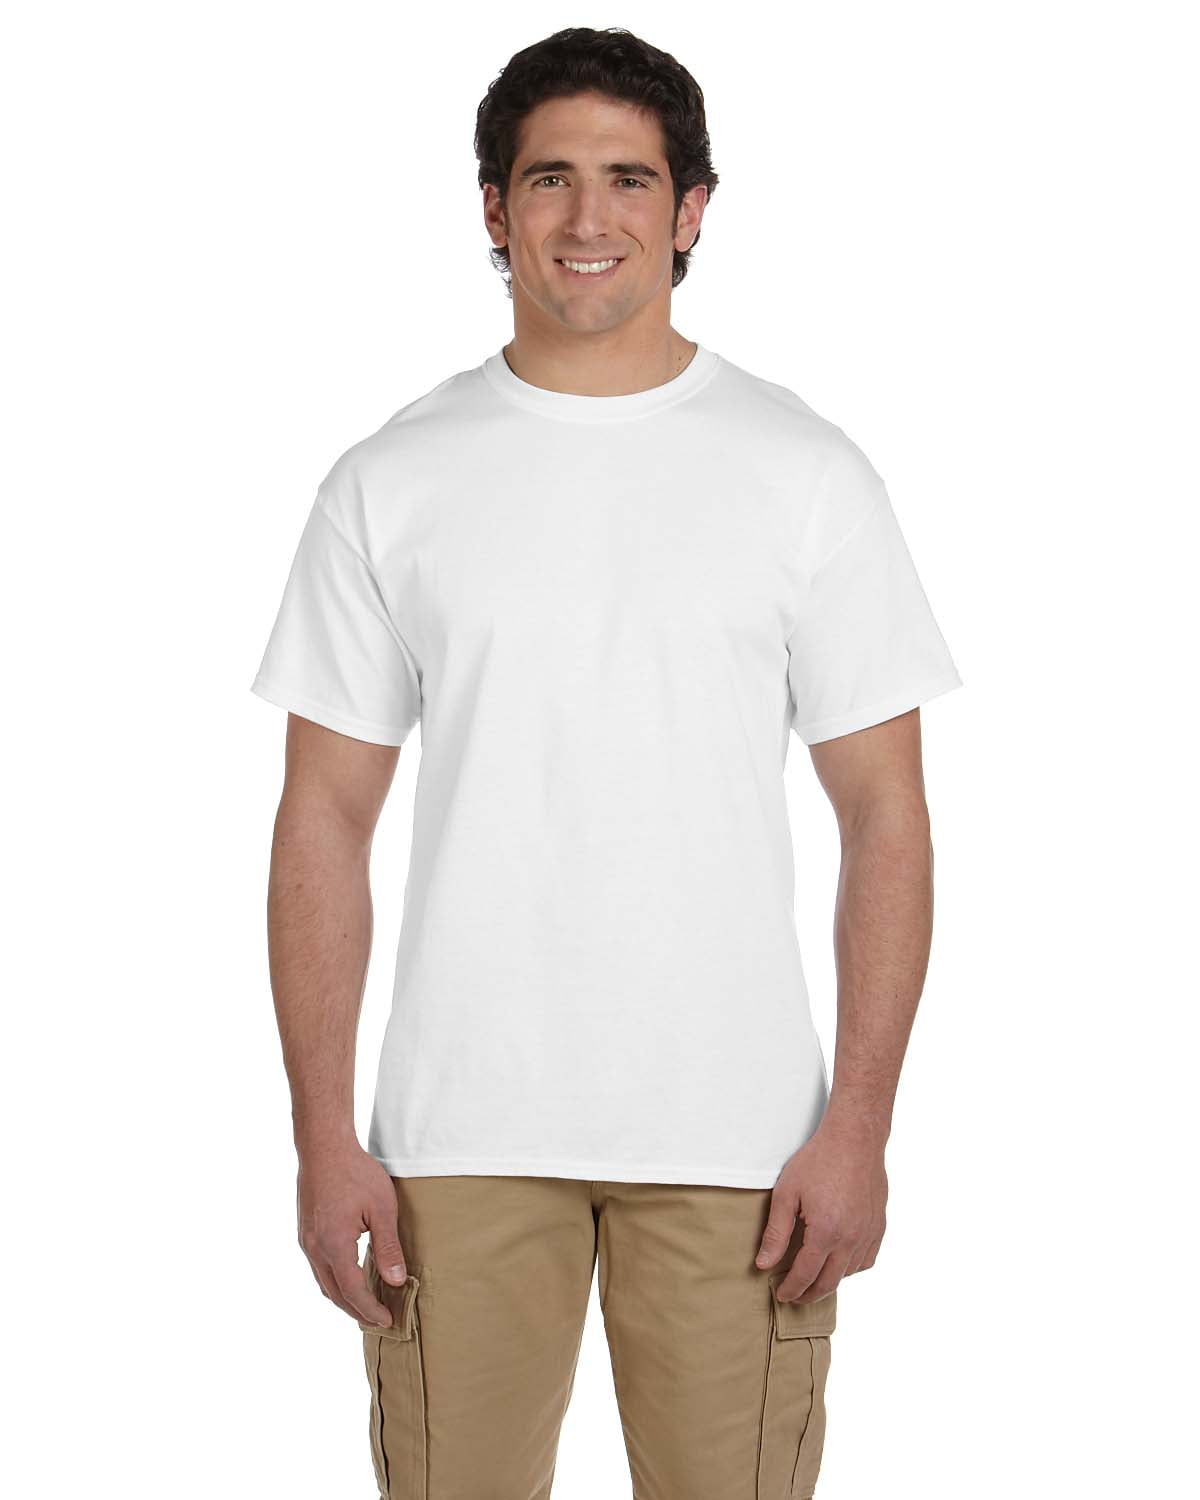 100% Cotton T-Shirt (Pack of 10) – ApparelTech